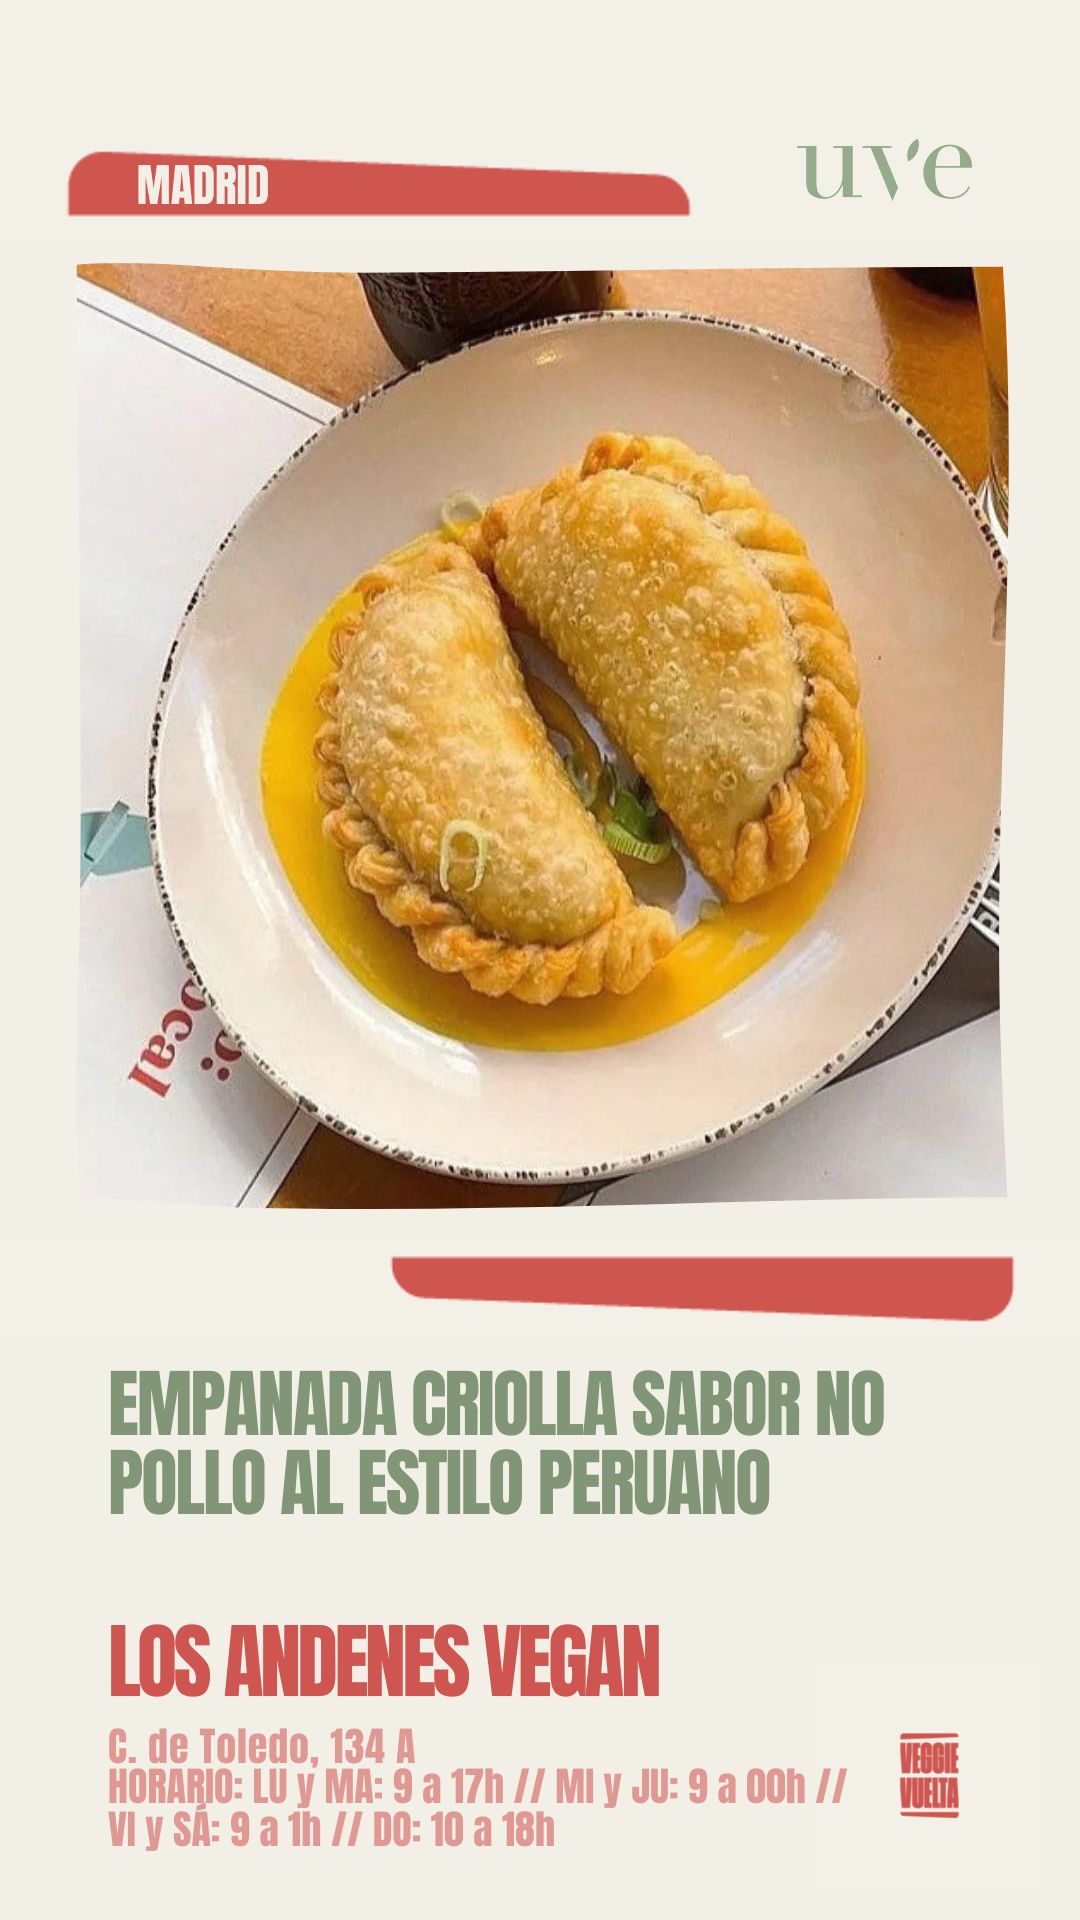 Los Andenes Vegan (Puerta de Toledo) Empanada criolla sabor no pollo al estilo peruano 